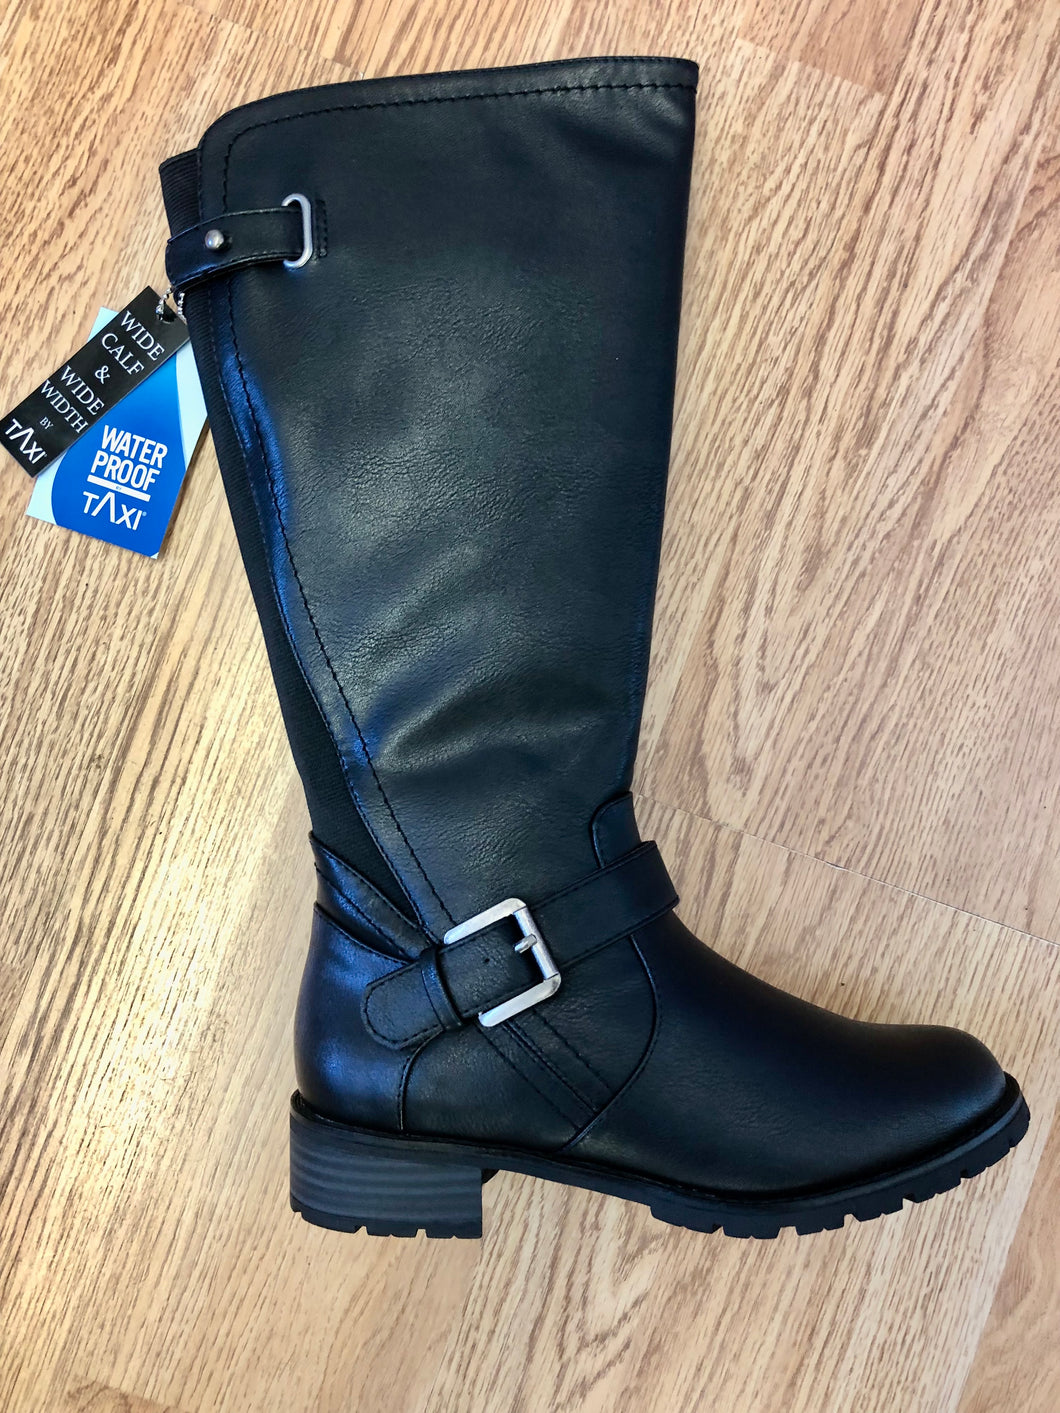 Queens Black Tall Boot: Waterproof & WIDE CALF